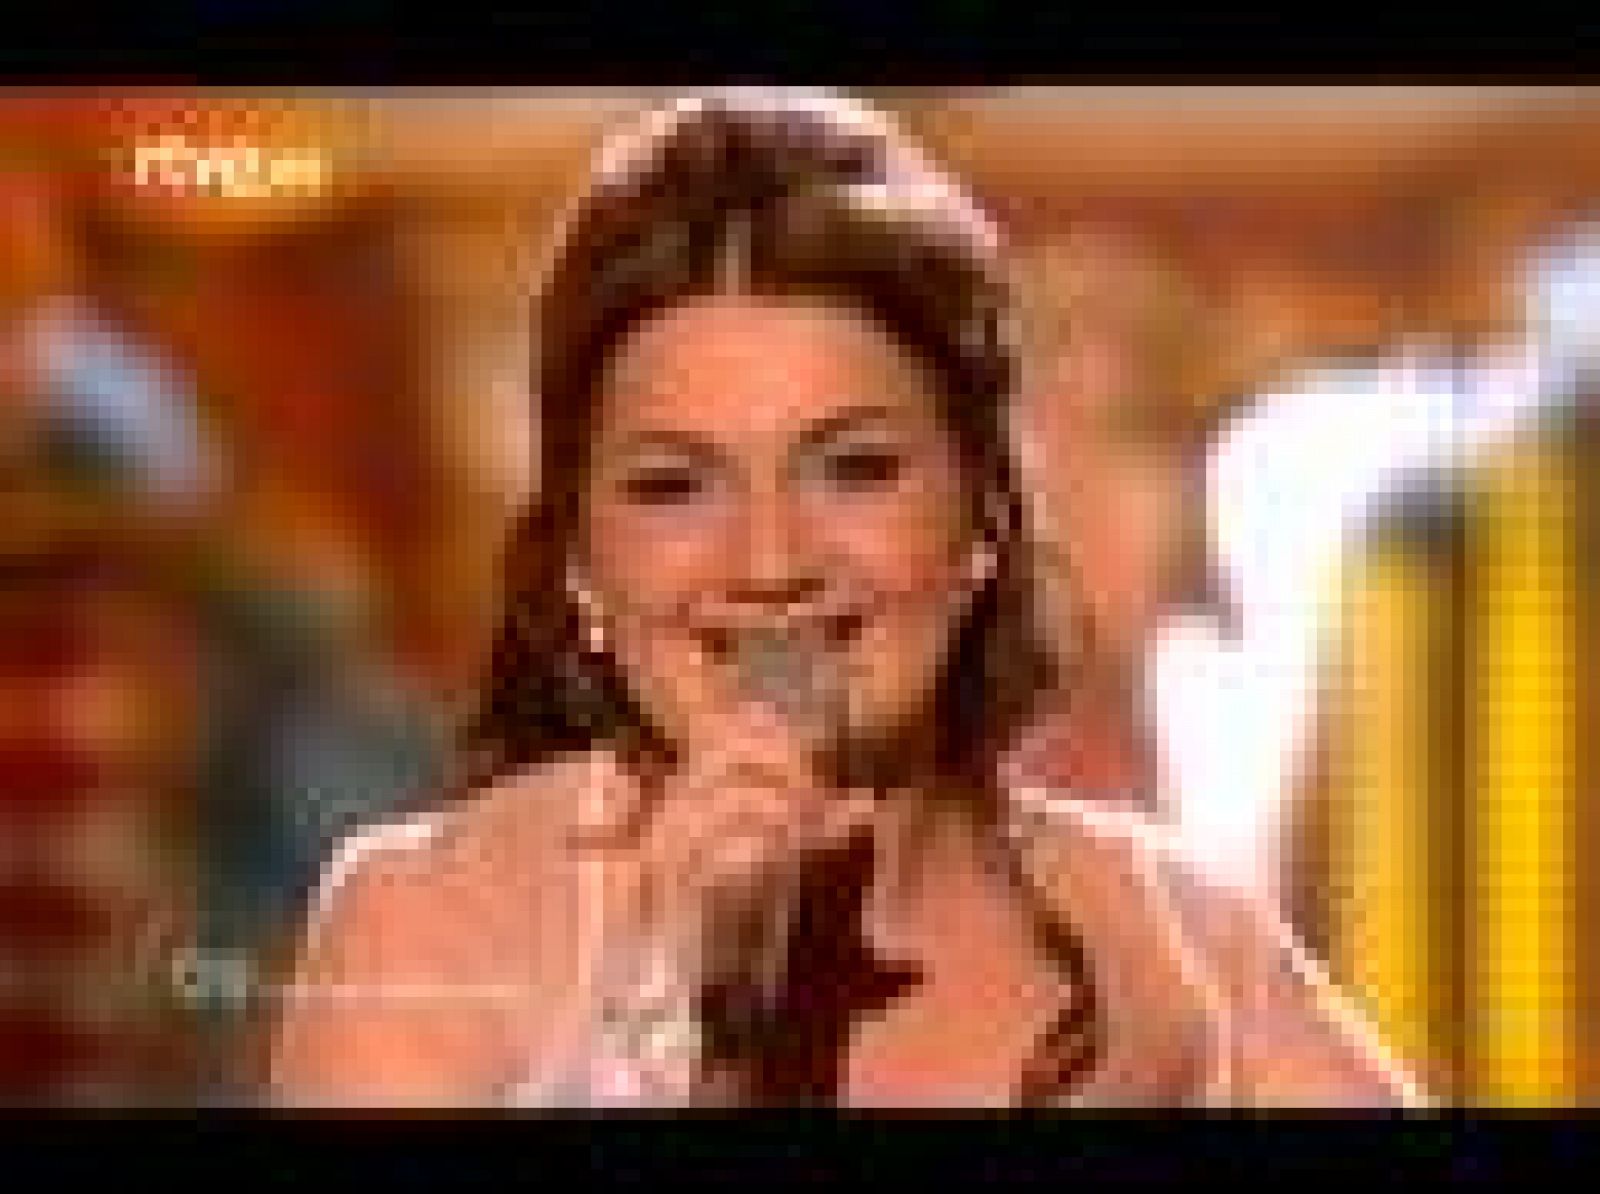   Sieneke y su canción "Ik Ben Verliefd (Sha-la-lie)" no han podido clasificarse para la final de Eurovisión, aunque han puesto una nota de color en su actuación en la segunda semifinal. 